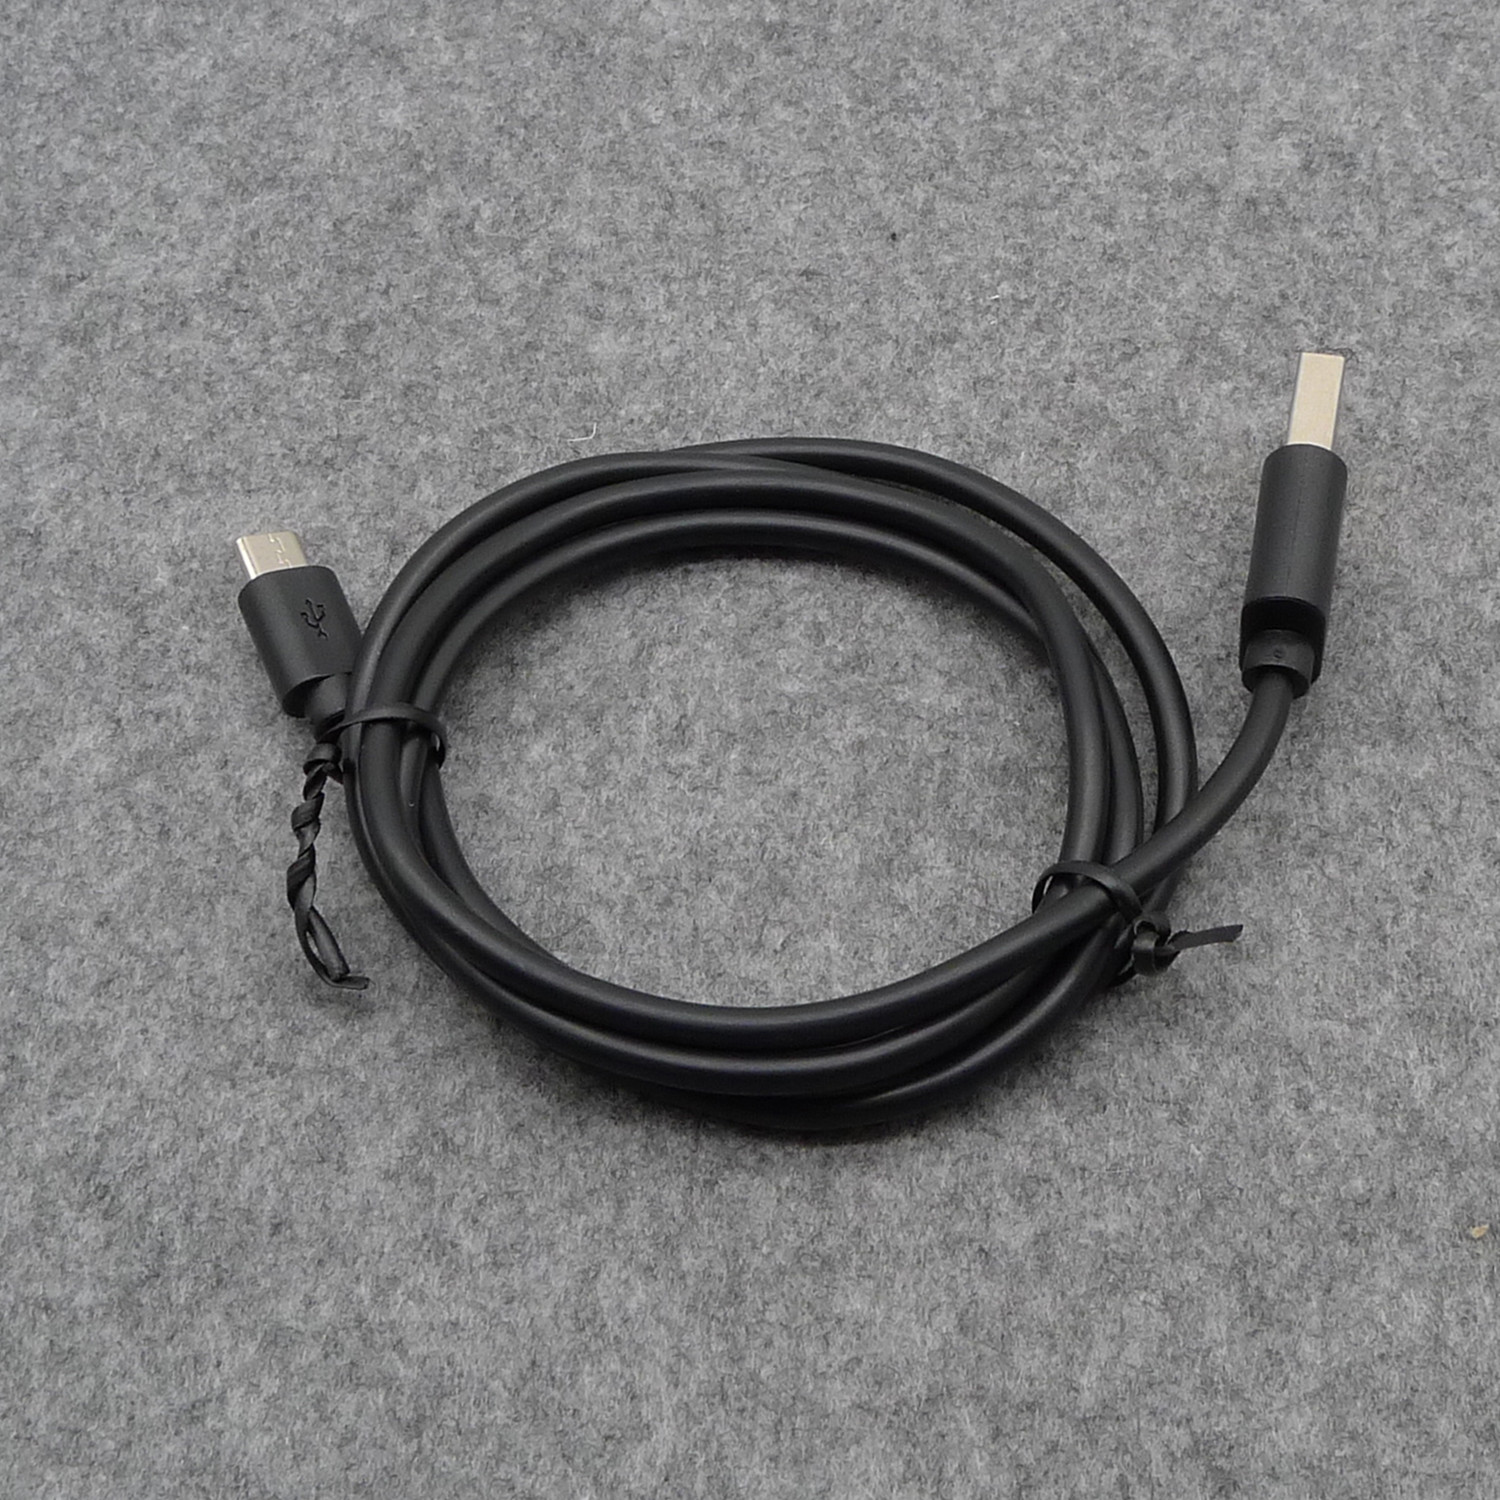 Pass 2A 0,5 м 1 м 1,5 м 2 м 3 м Кабель Высококачественный USB-кабель типа C Быстрая зарядка USB-кабели для даты и времени Кабель для зарядки типа C для кабелей сотового телефона Samsung